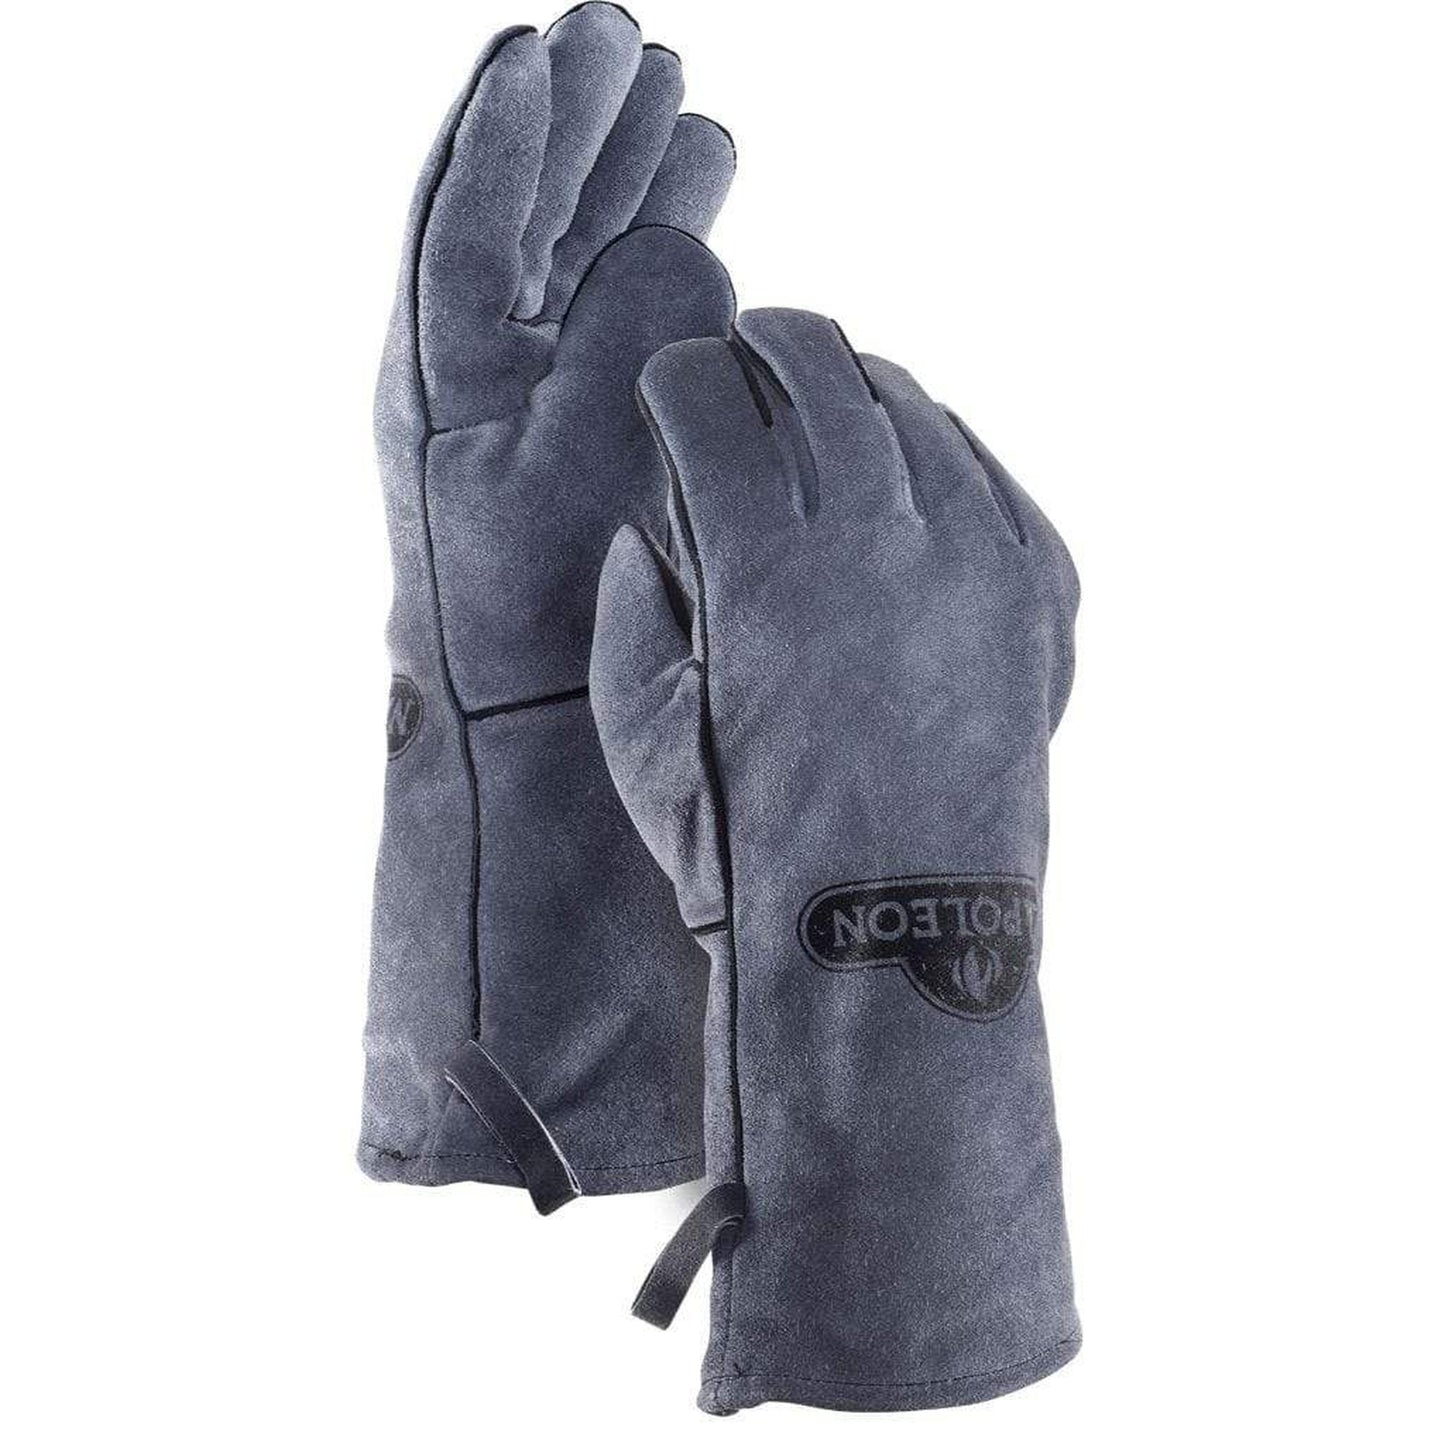 Napoleon 62147/62145 BBQ Gloves